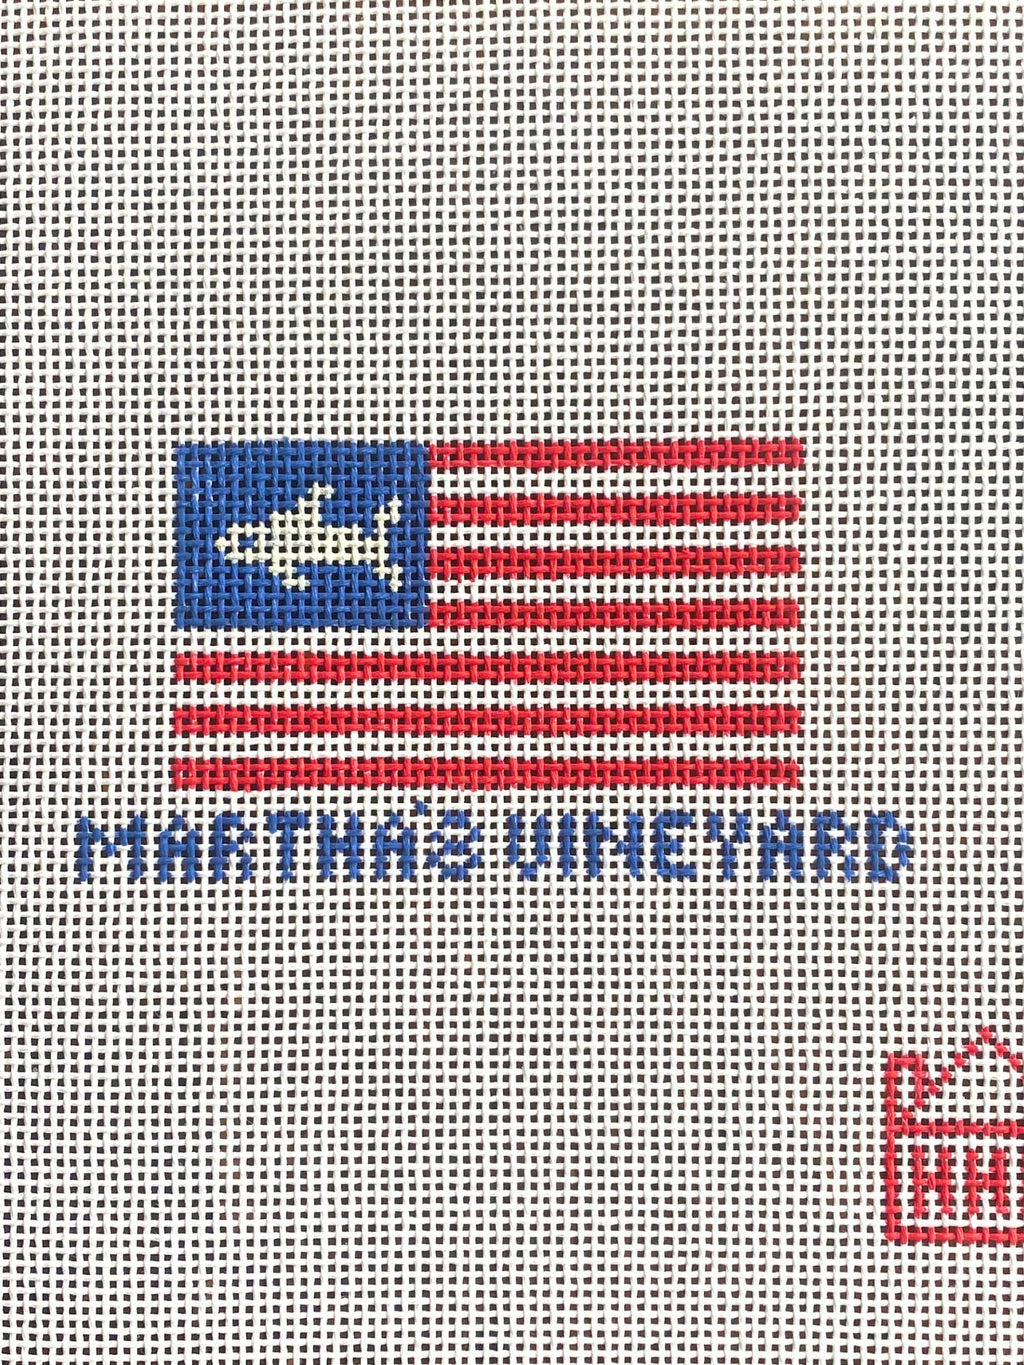 Vineyard American Flag